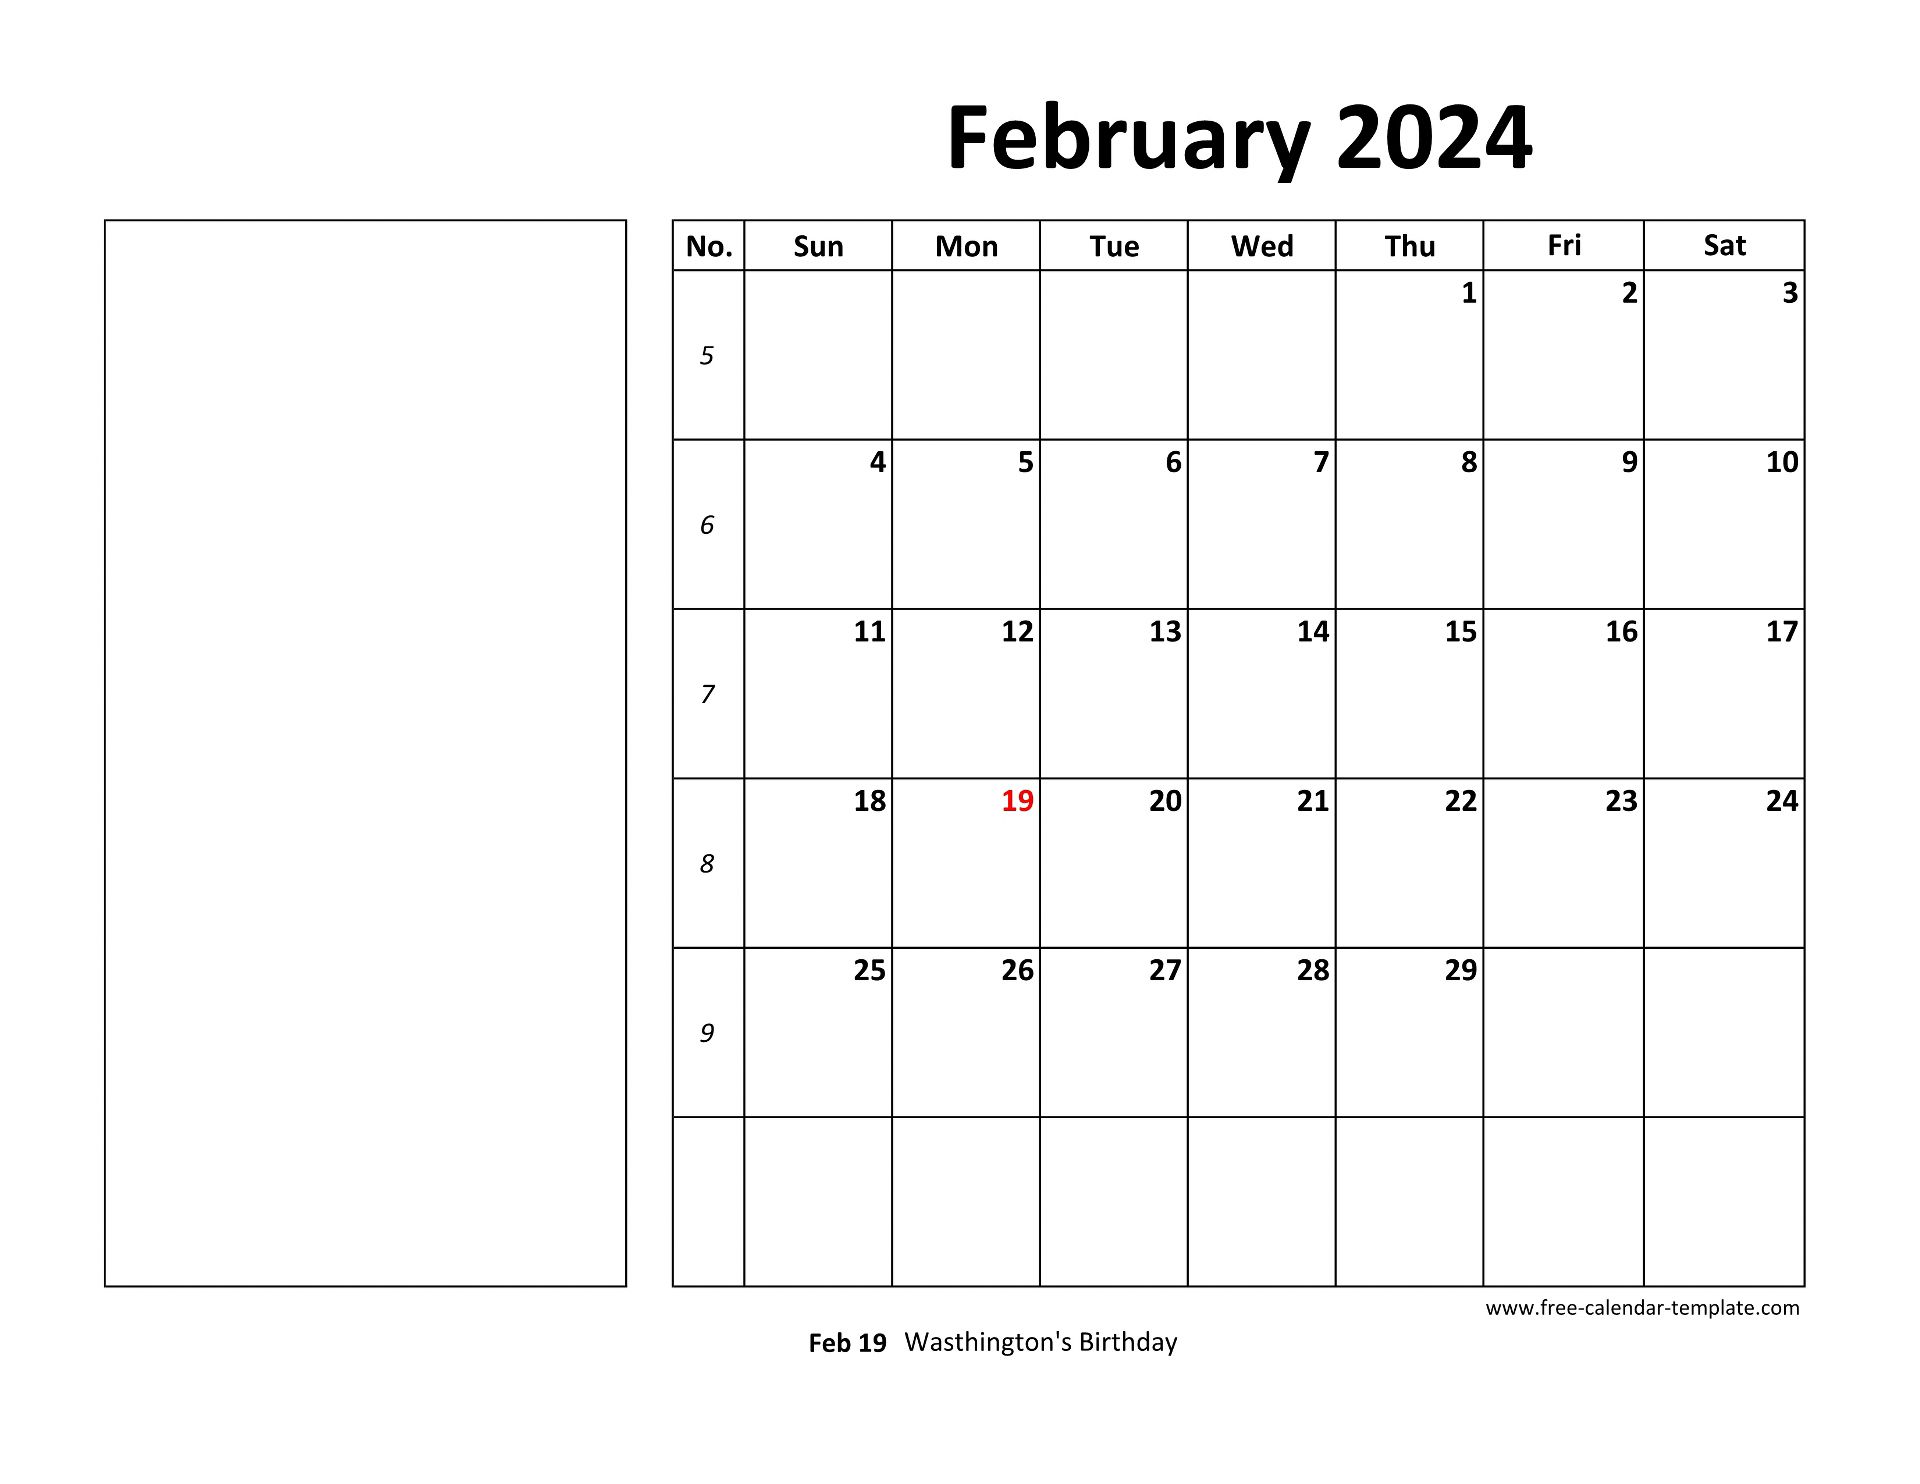 February 2024 Free Calendar Tempplate | Free-calendar-template.com